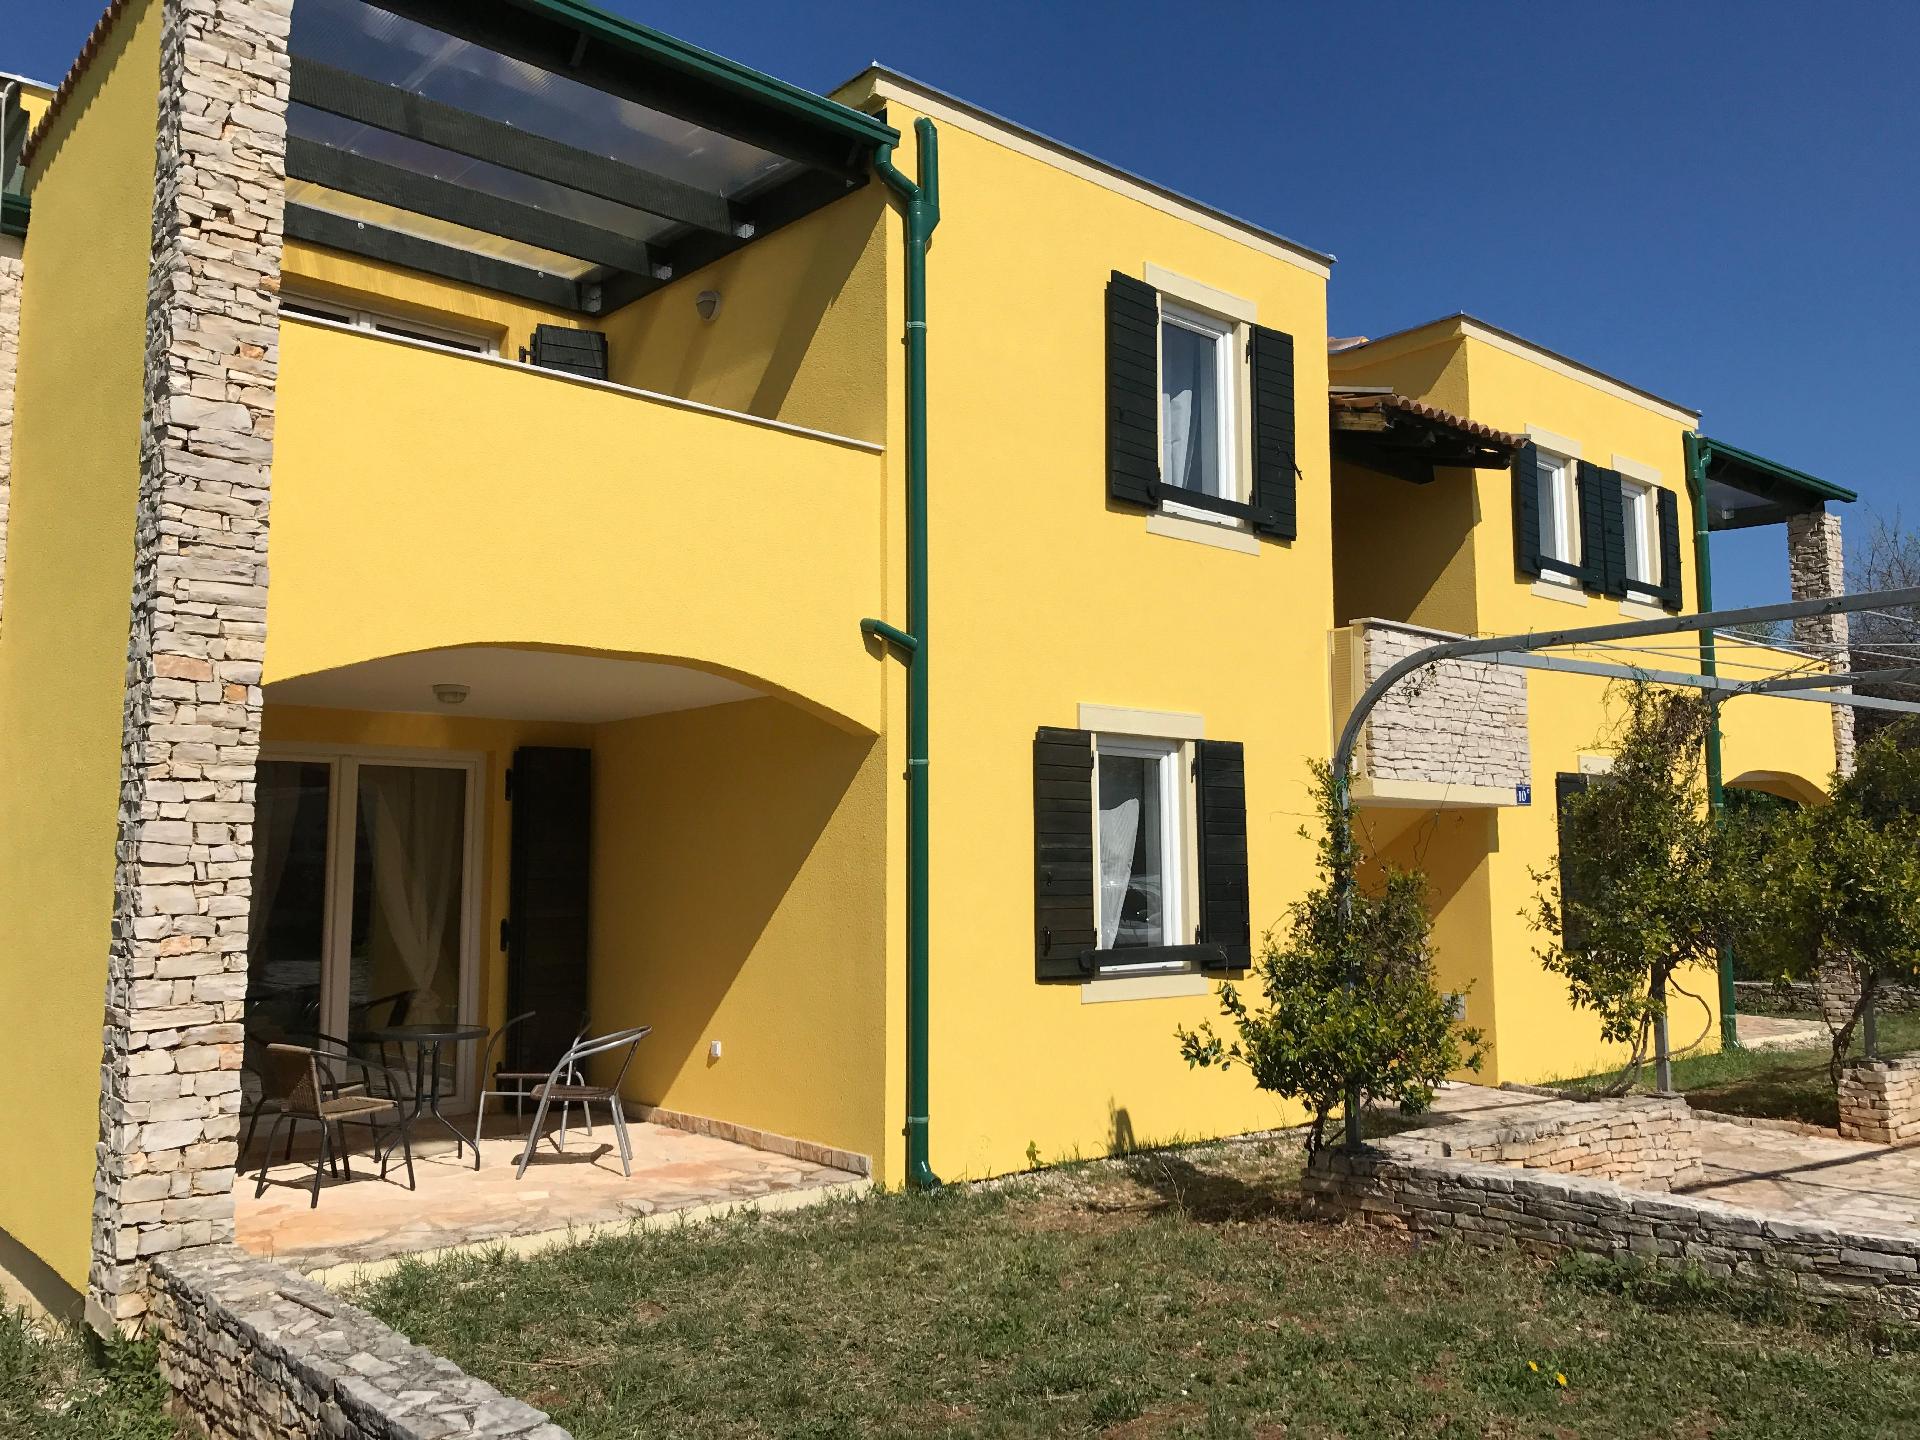 Ferienwohnung für 4 Personen ca. 48 m² i Ferienhaus in Istrien